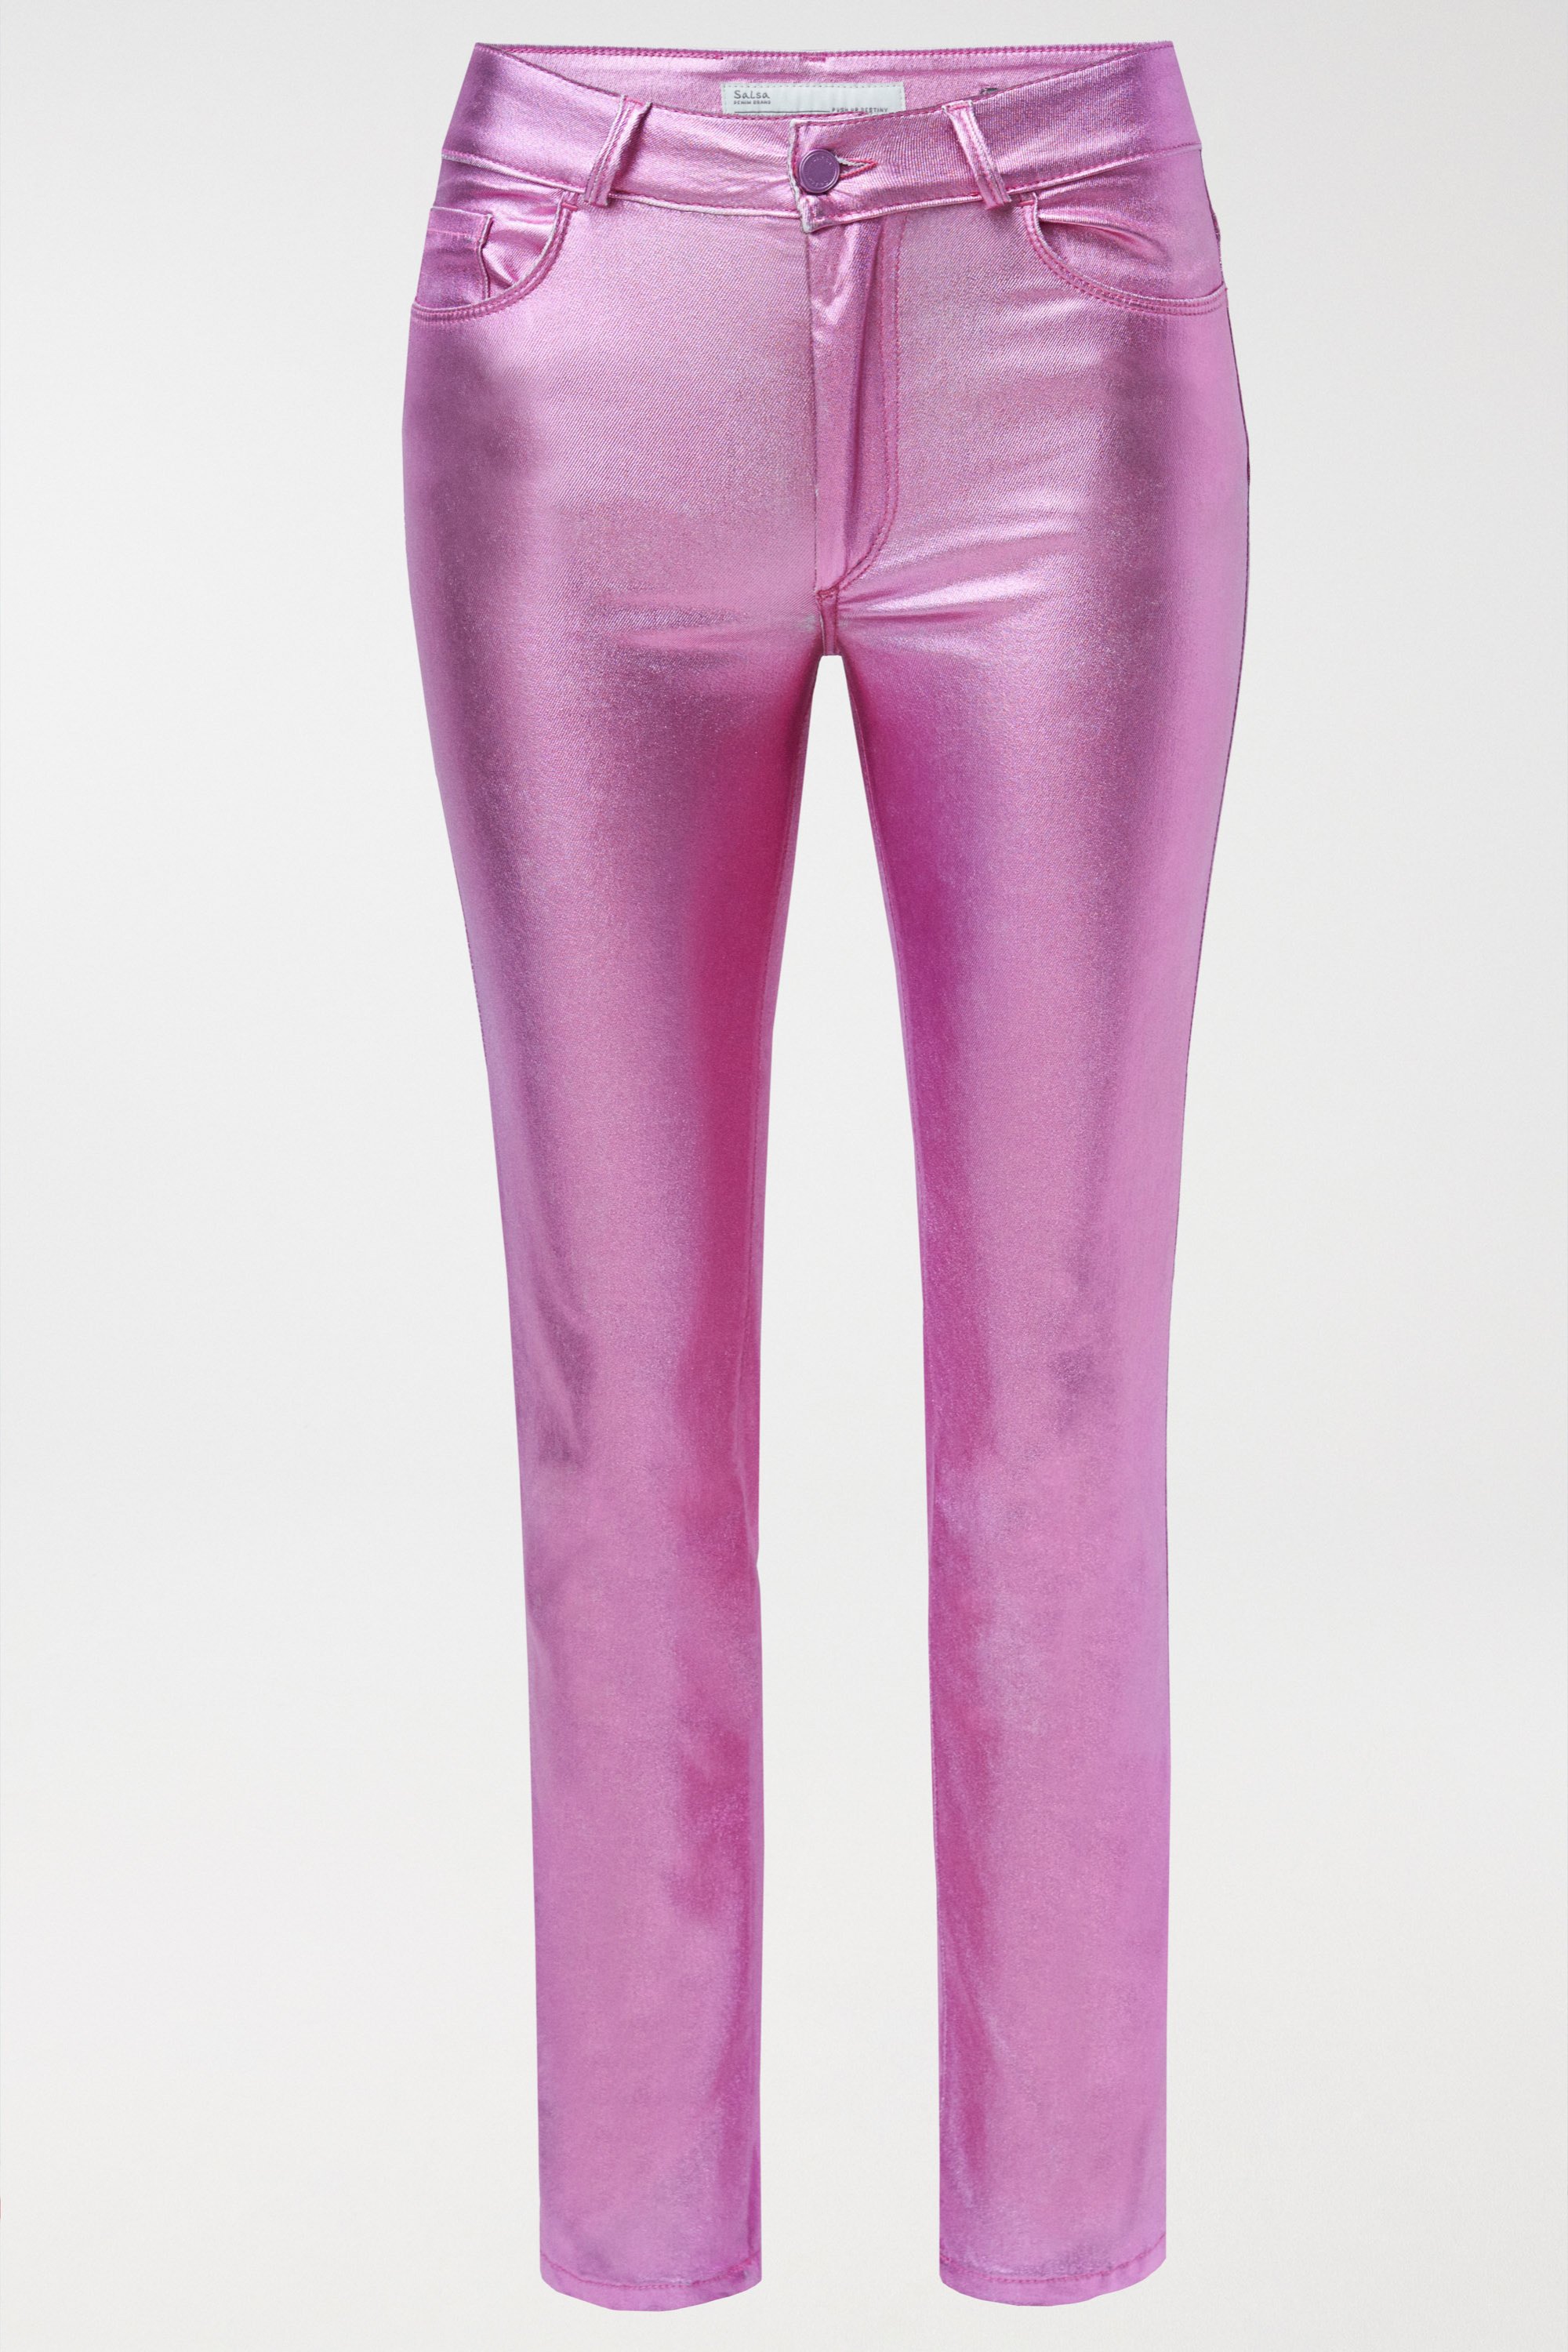 Pink Metallic Pants – Olga de Polga